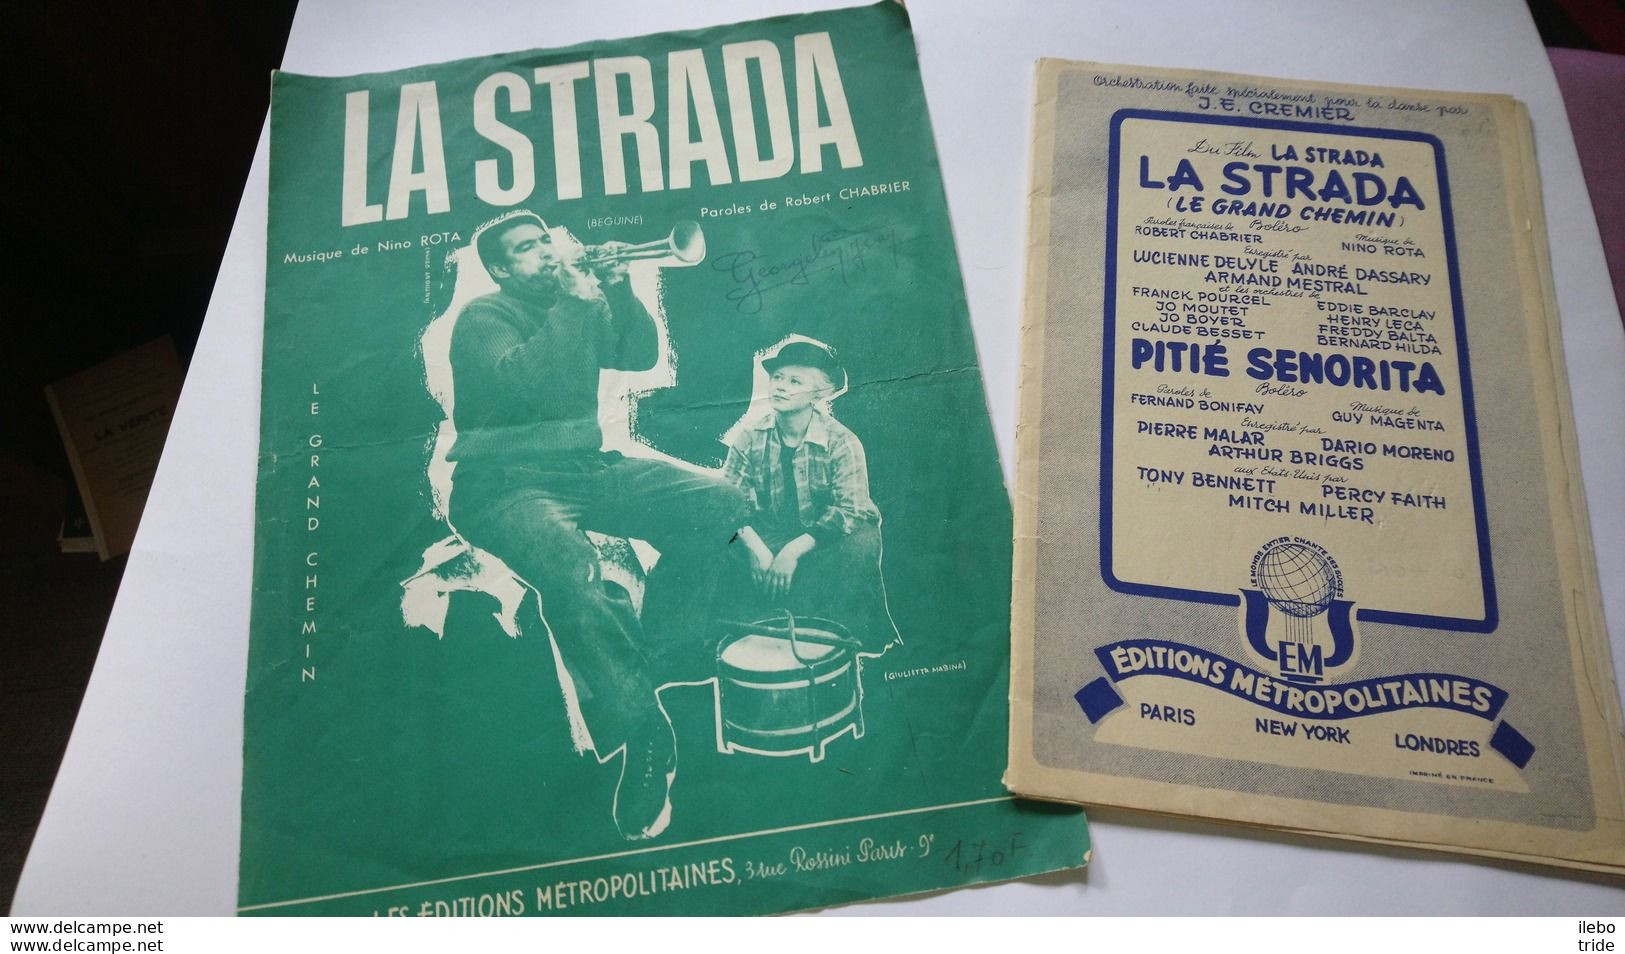 2 Partitions La Strada Fellini Partition Ancienne Musique De Nino Rota Danse Boléro - Spartiti